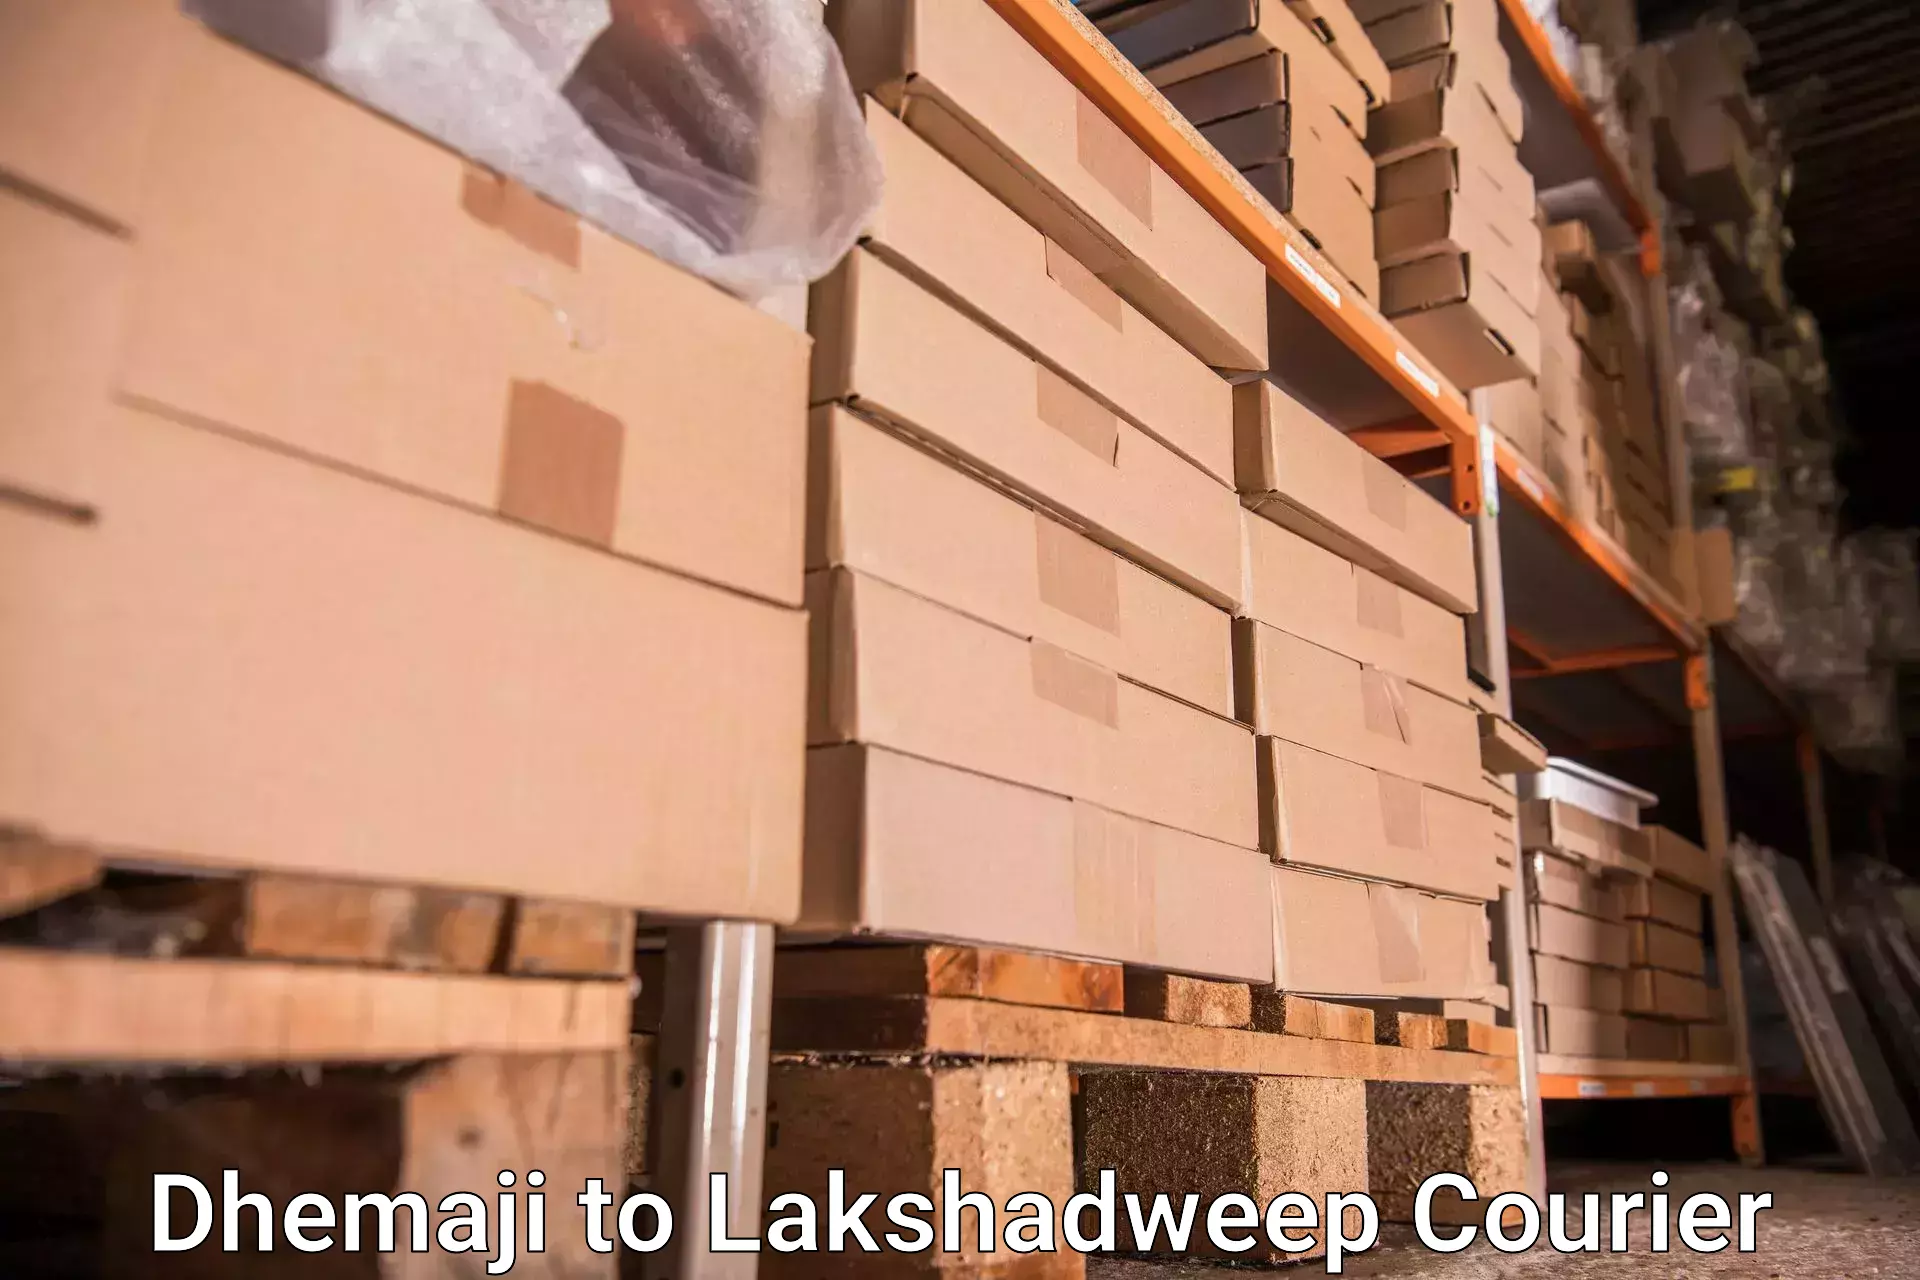 Baggage transport network Dhemaji to Lakshadweep